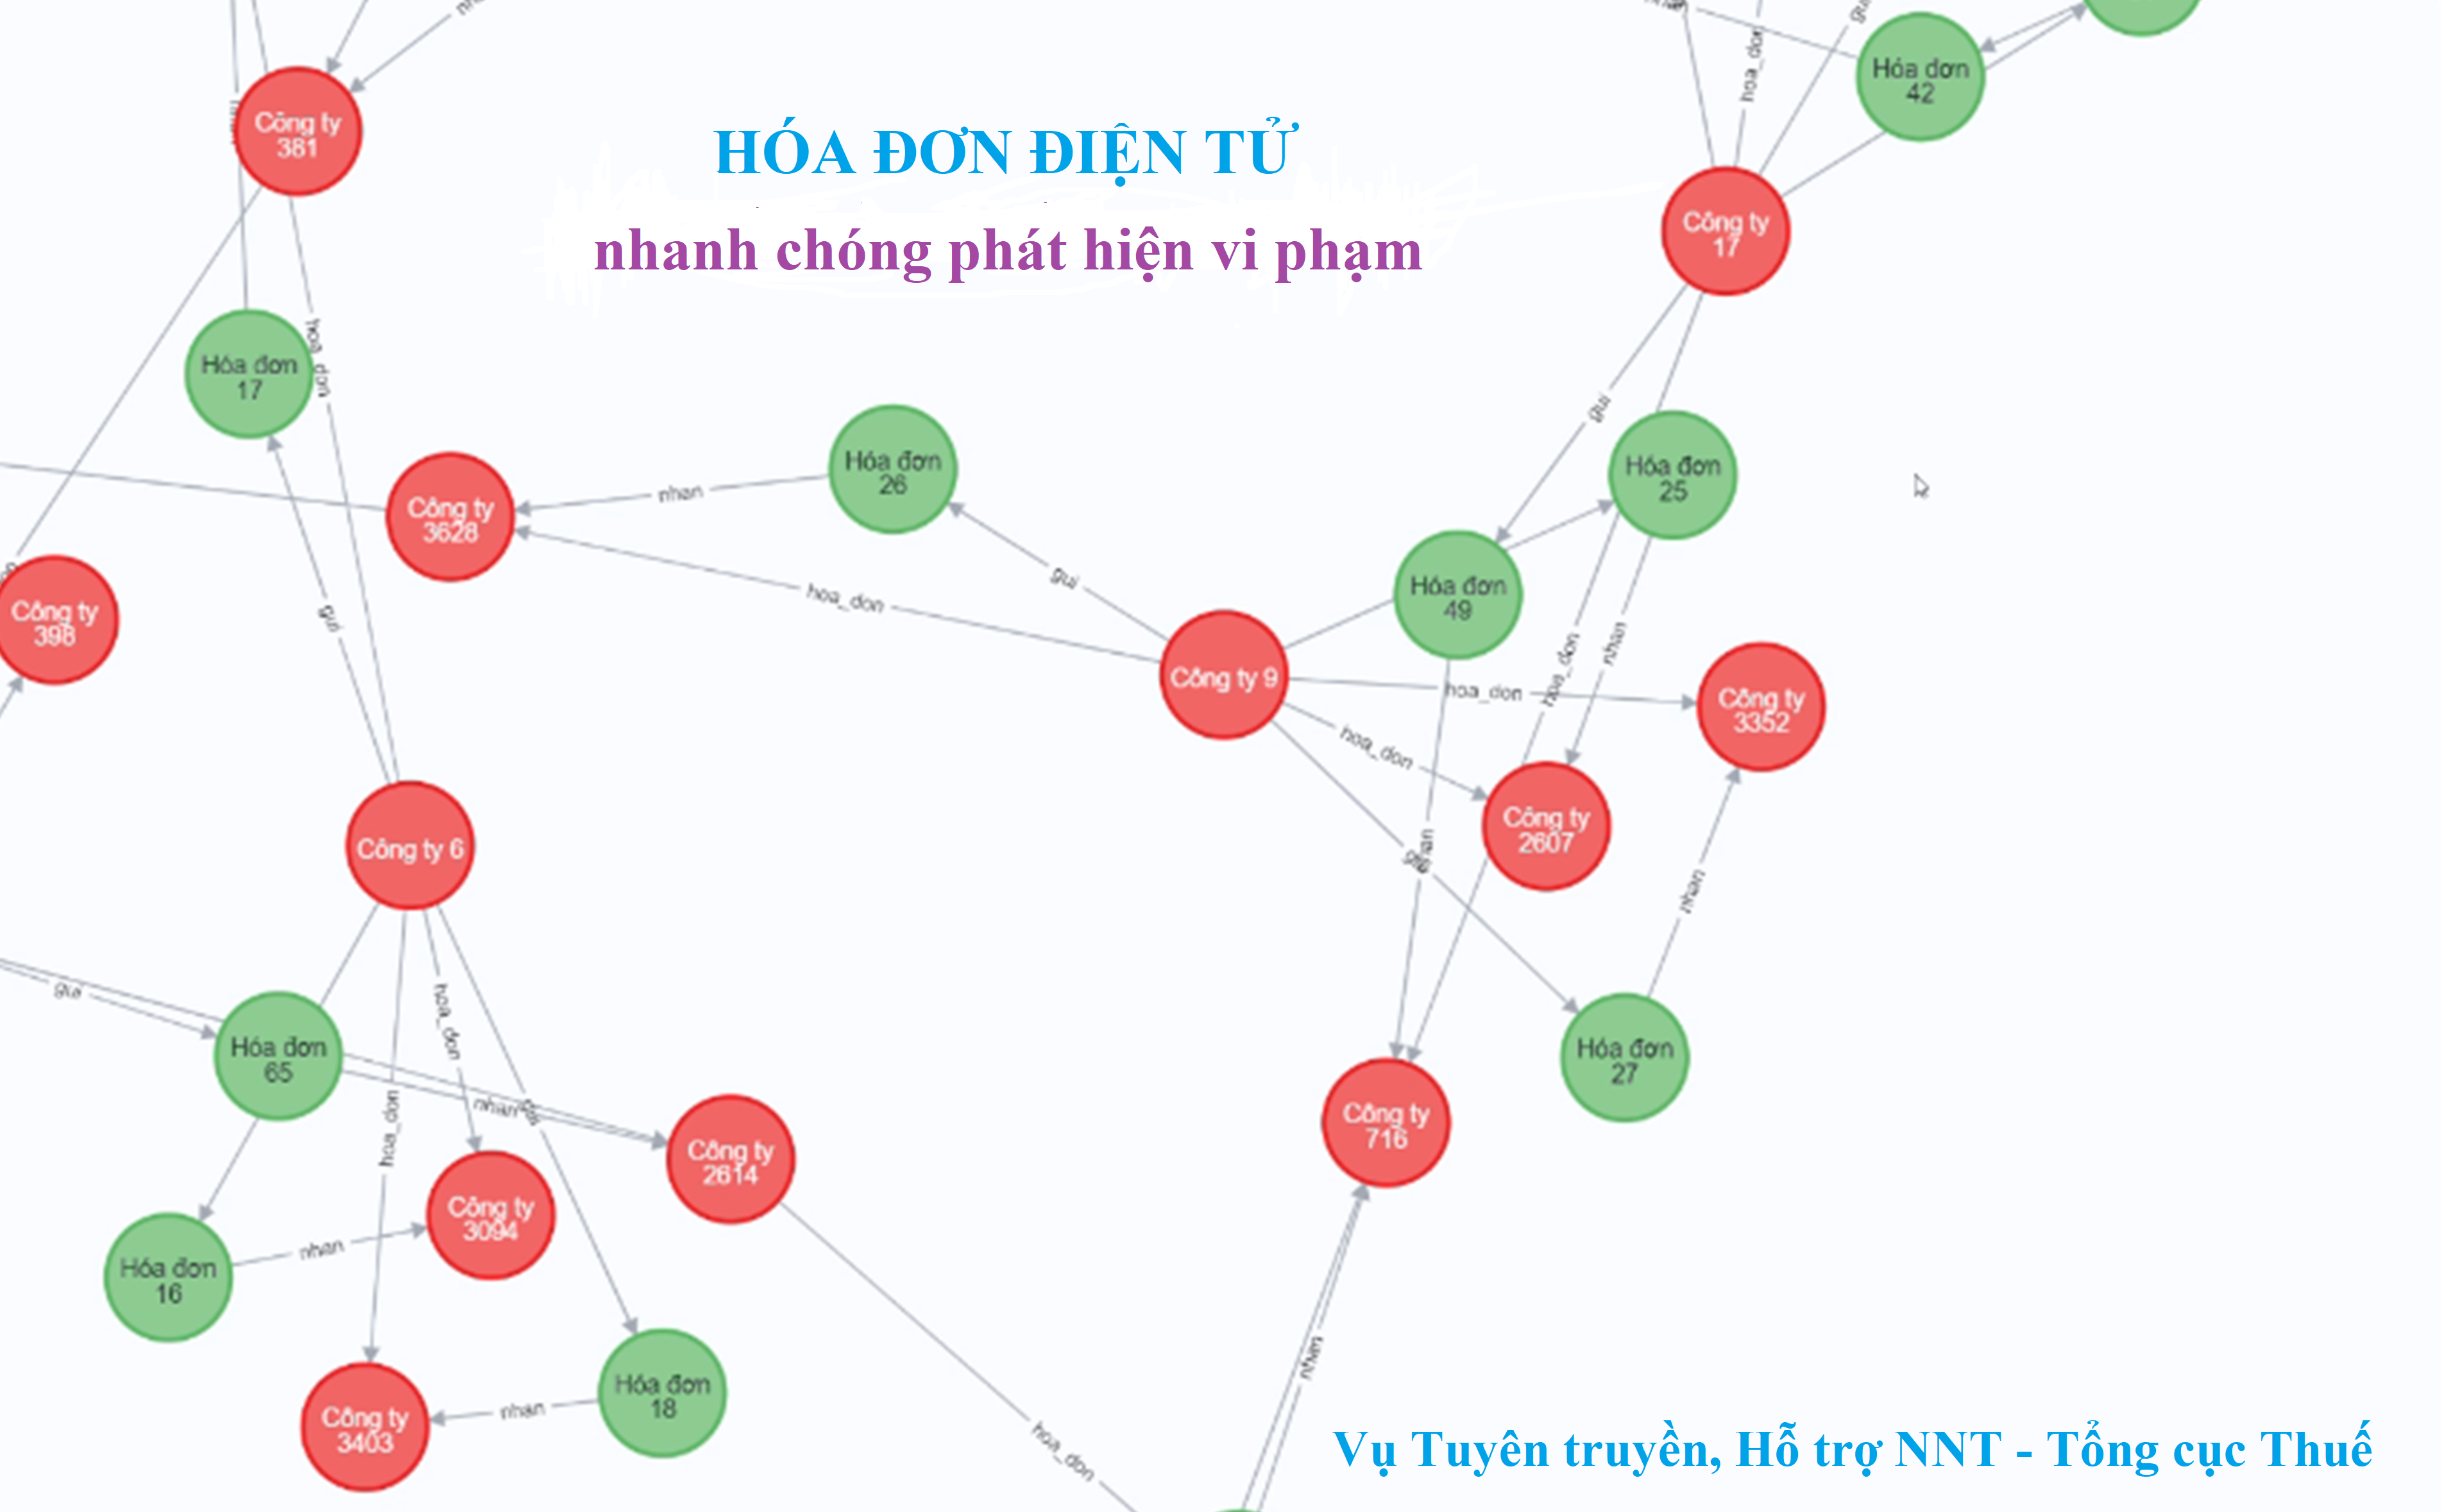 Giải pháp nào để quản lý thuế hiệu quả  Thời báo Tài chính Việt Nam